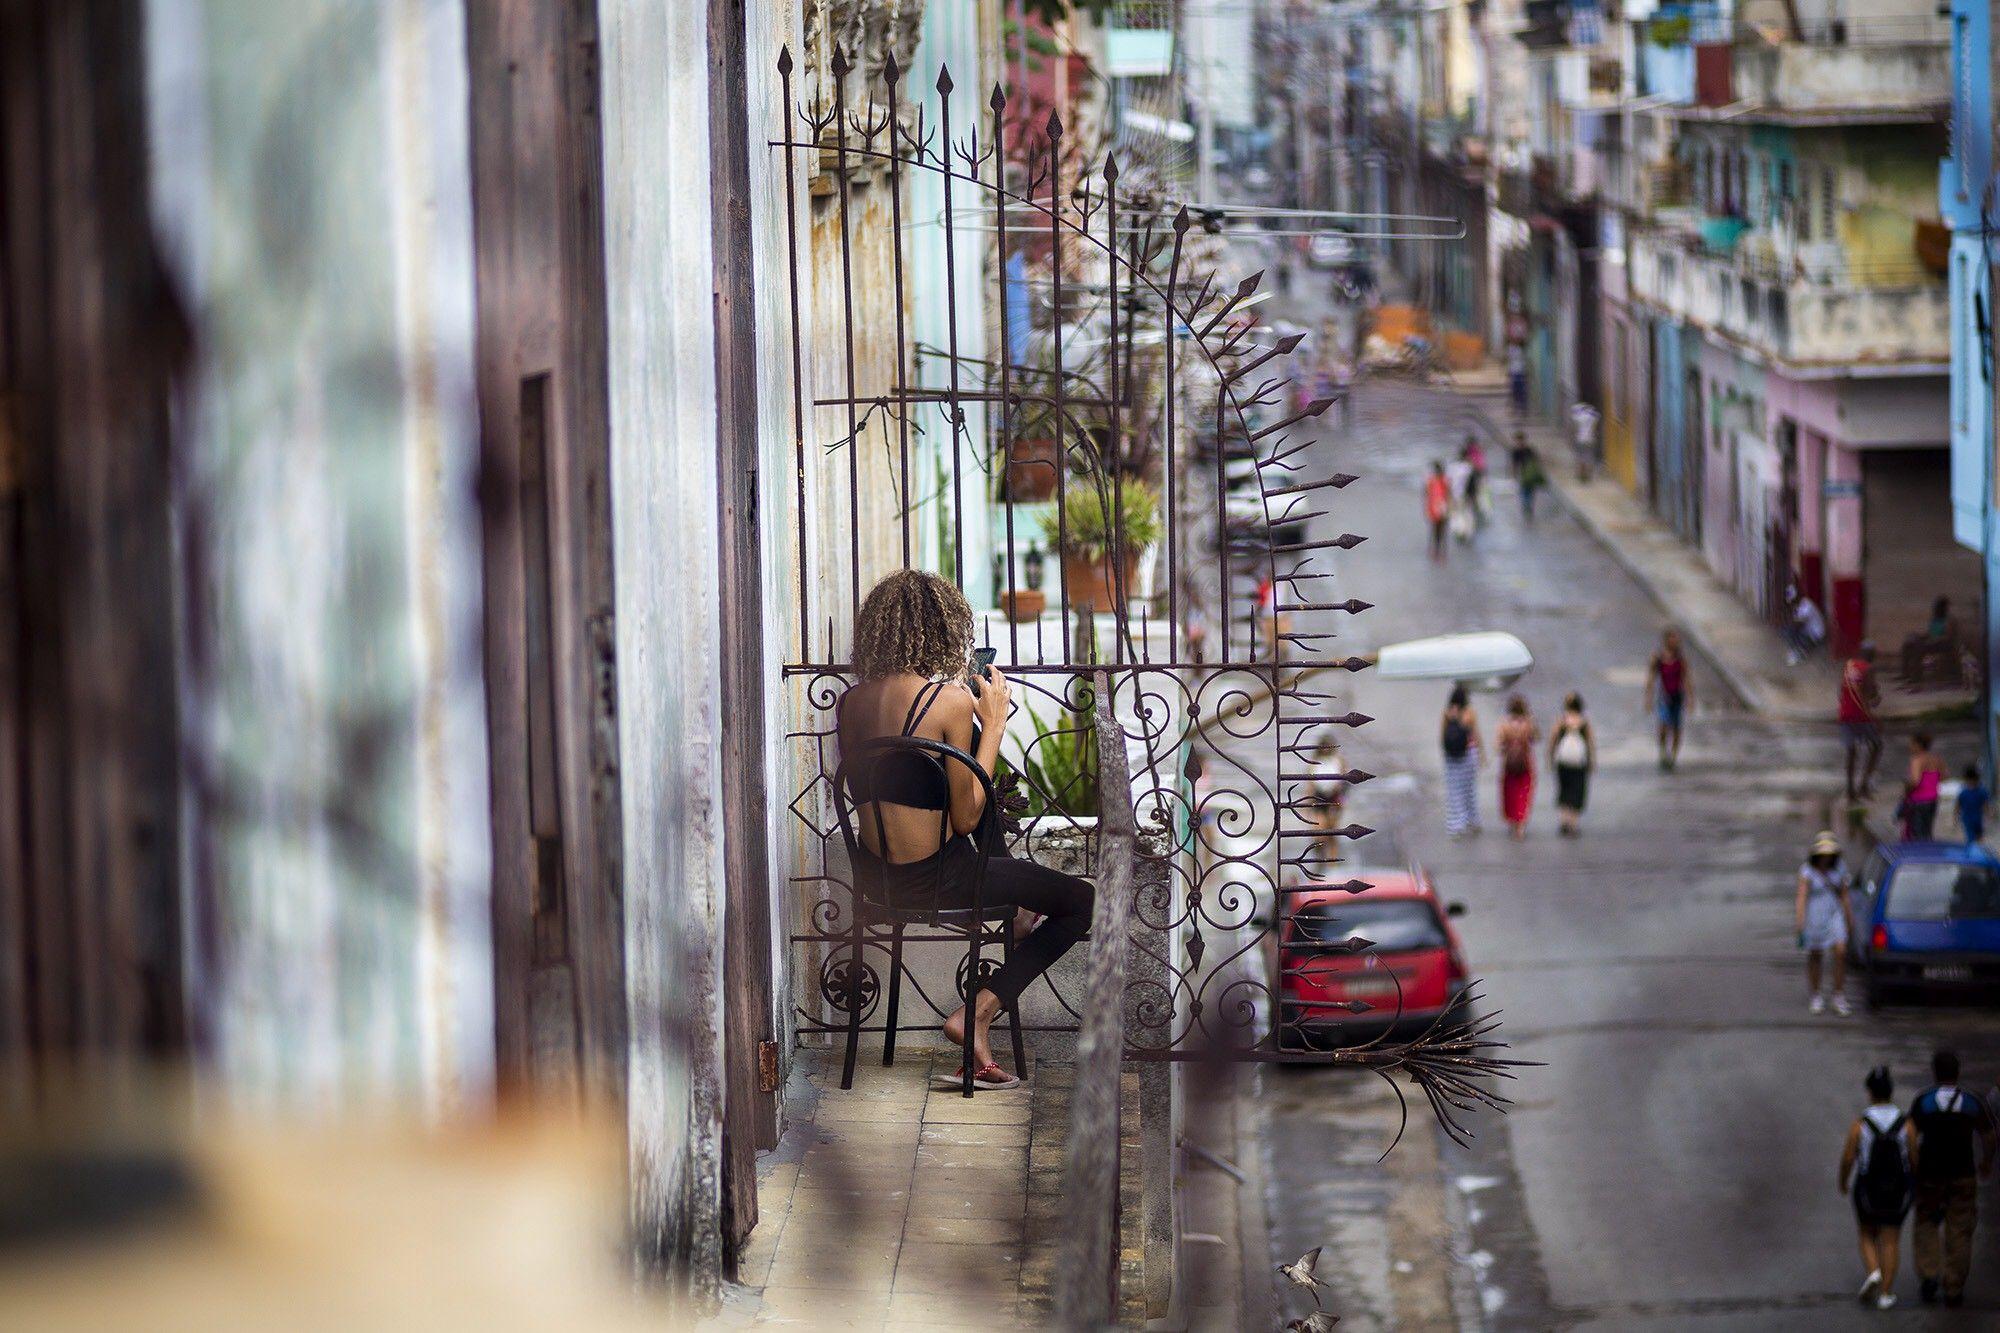 Conectarse a la 4G LTE permite entender Internet como nunca antes en Cuba. Hoy sólo está disponible para una minoría. Fotos: Fernando Medina/Fonoma